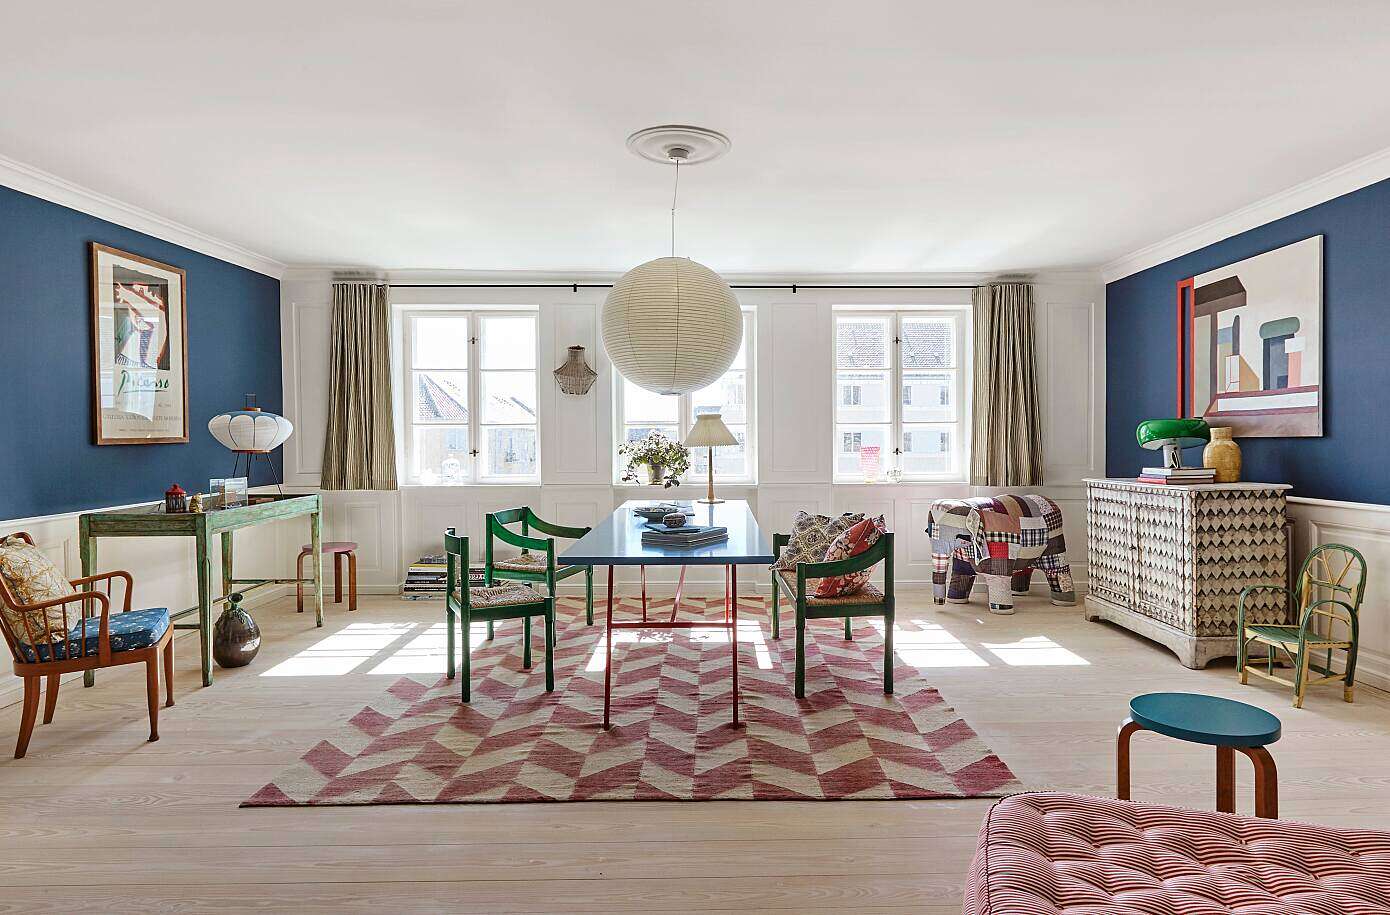 Apartment in Copenhagen by Tina Seidenfaden Busck